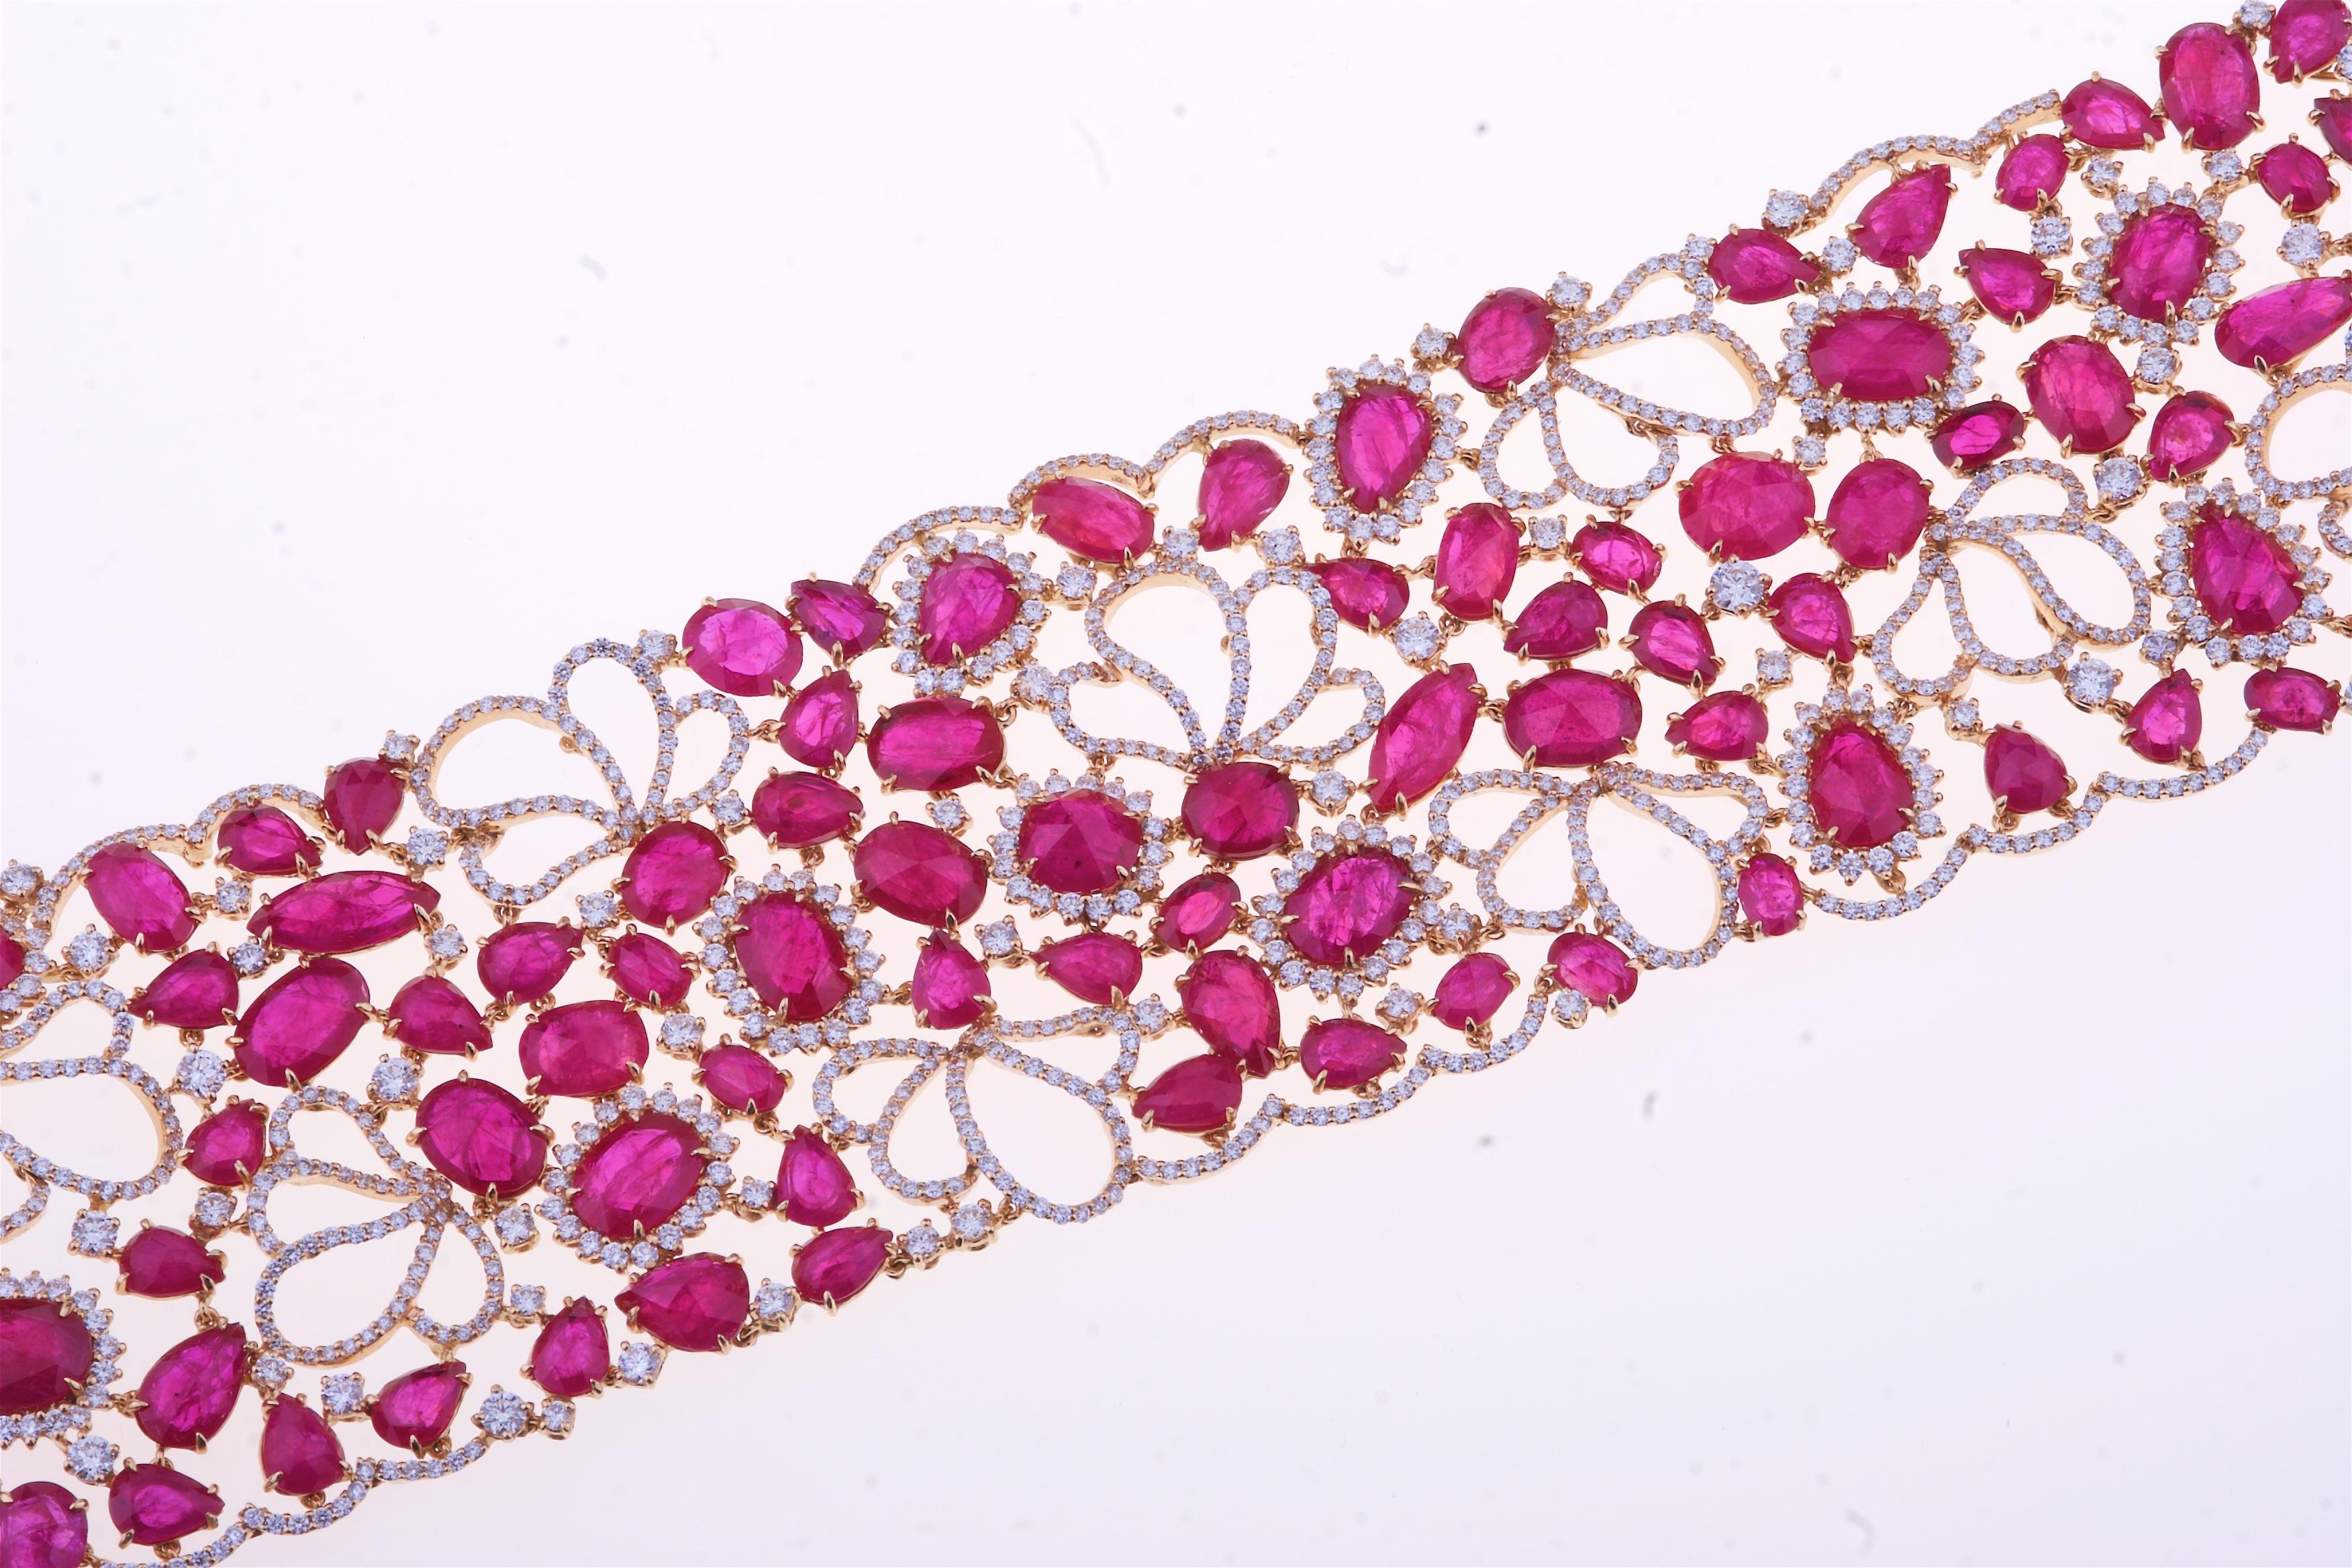 Atemberaubendes Armband mit Rubin und Diamanten Blumen Design.
Zehn Brigt Rubin (ct. 78,40) auf einem Blumenteppich gemischt mit Diamanten (G Farbe SI - ct. 13,13) für dieses einzigartige Stück.
Vollständig in Italien hergestellt, von erfahrenen